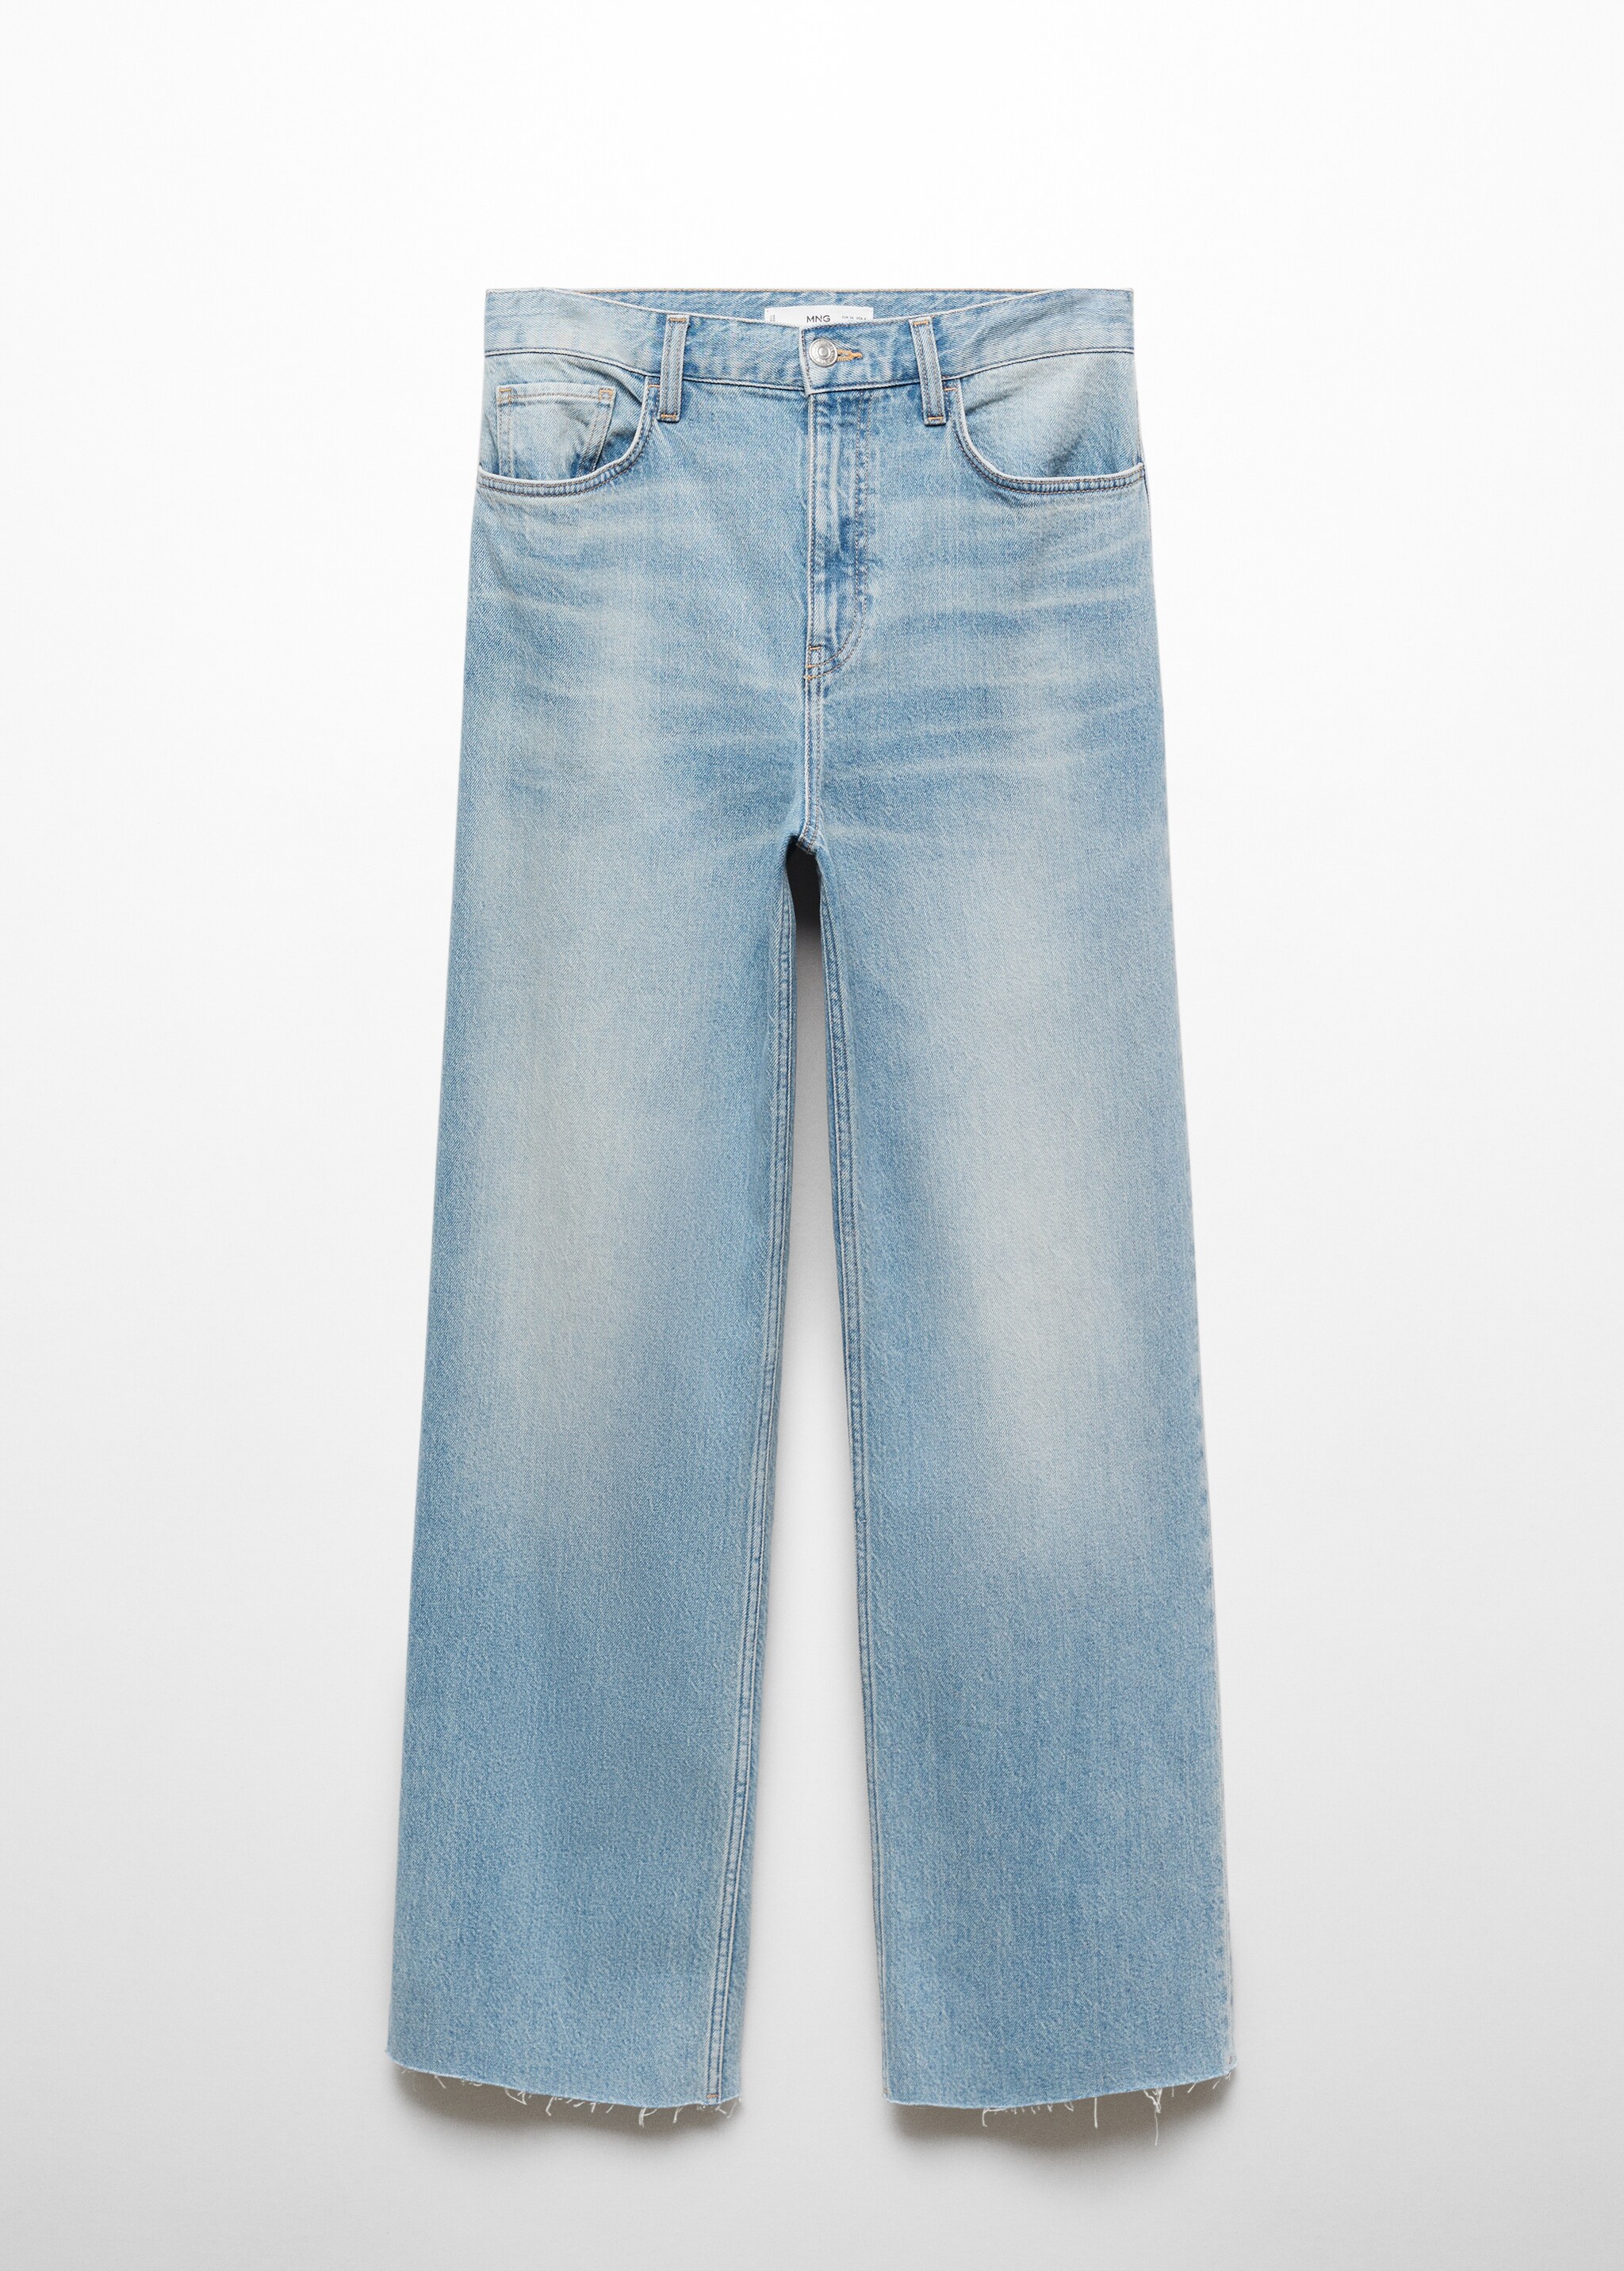 Прямые джинсы с посадкой на талии - Изделие без модели